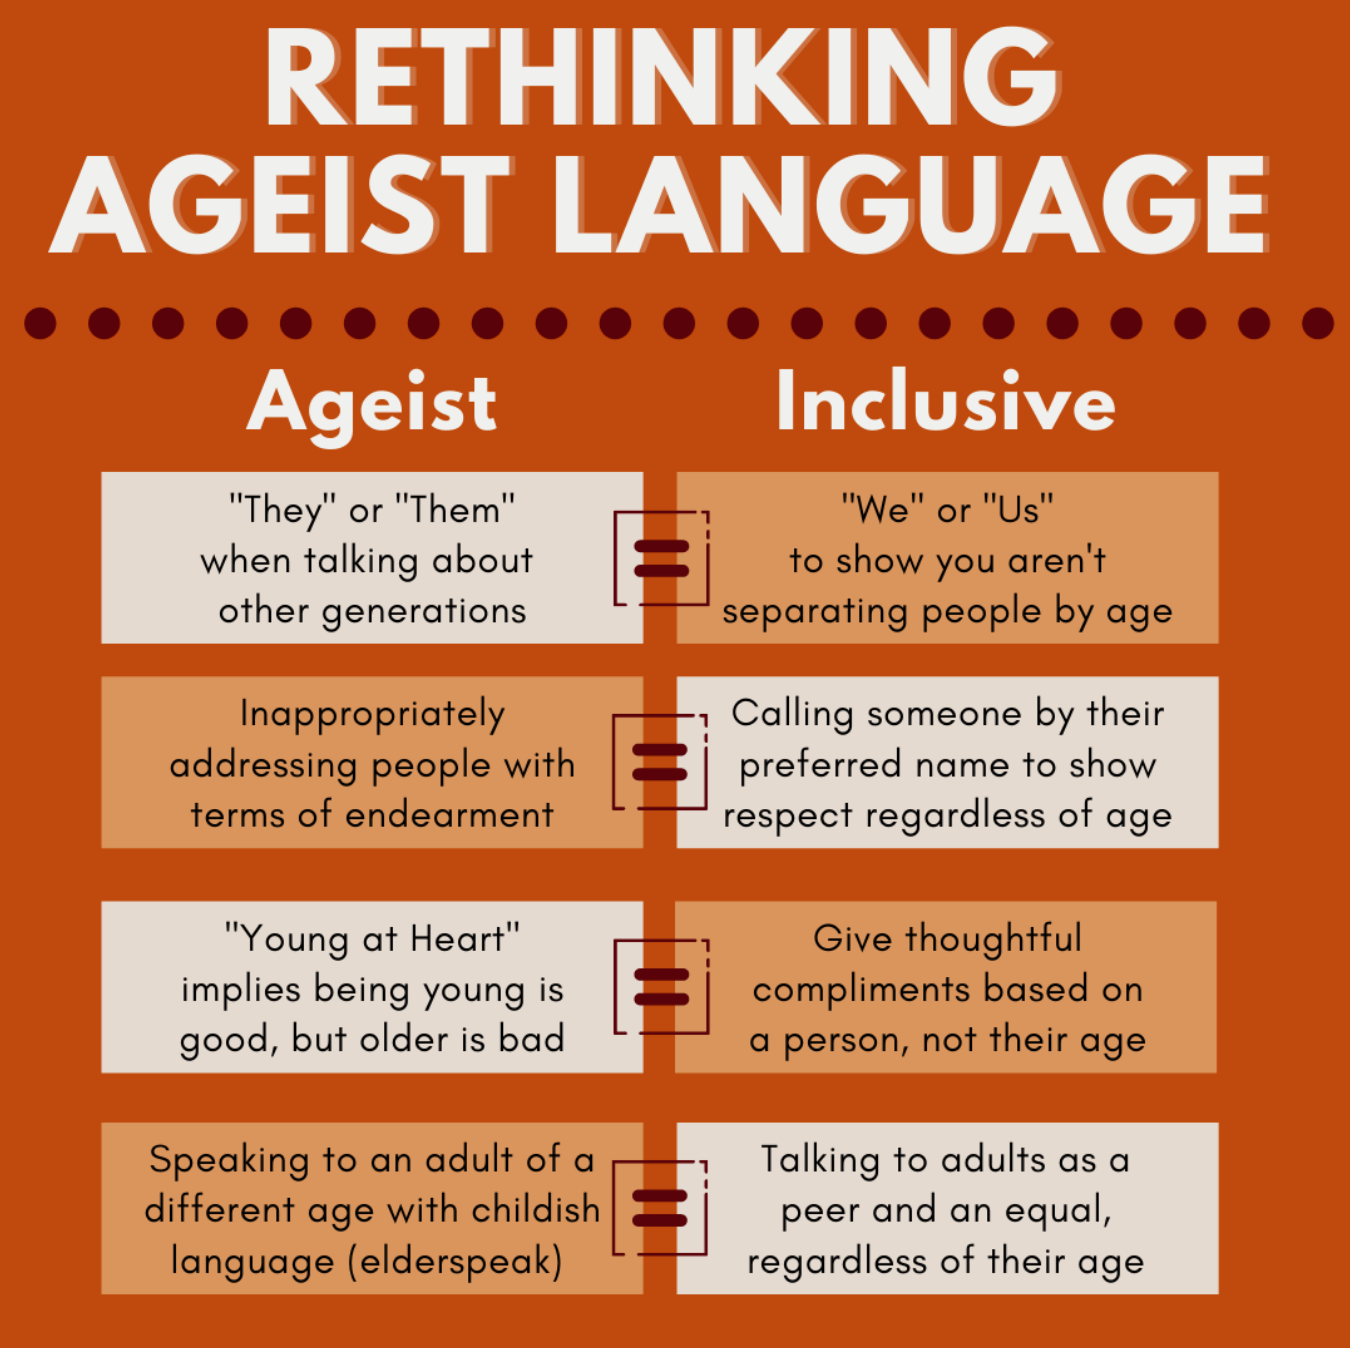 Rethinking Ageist Language